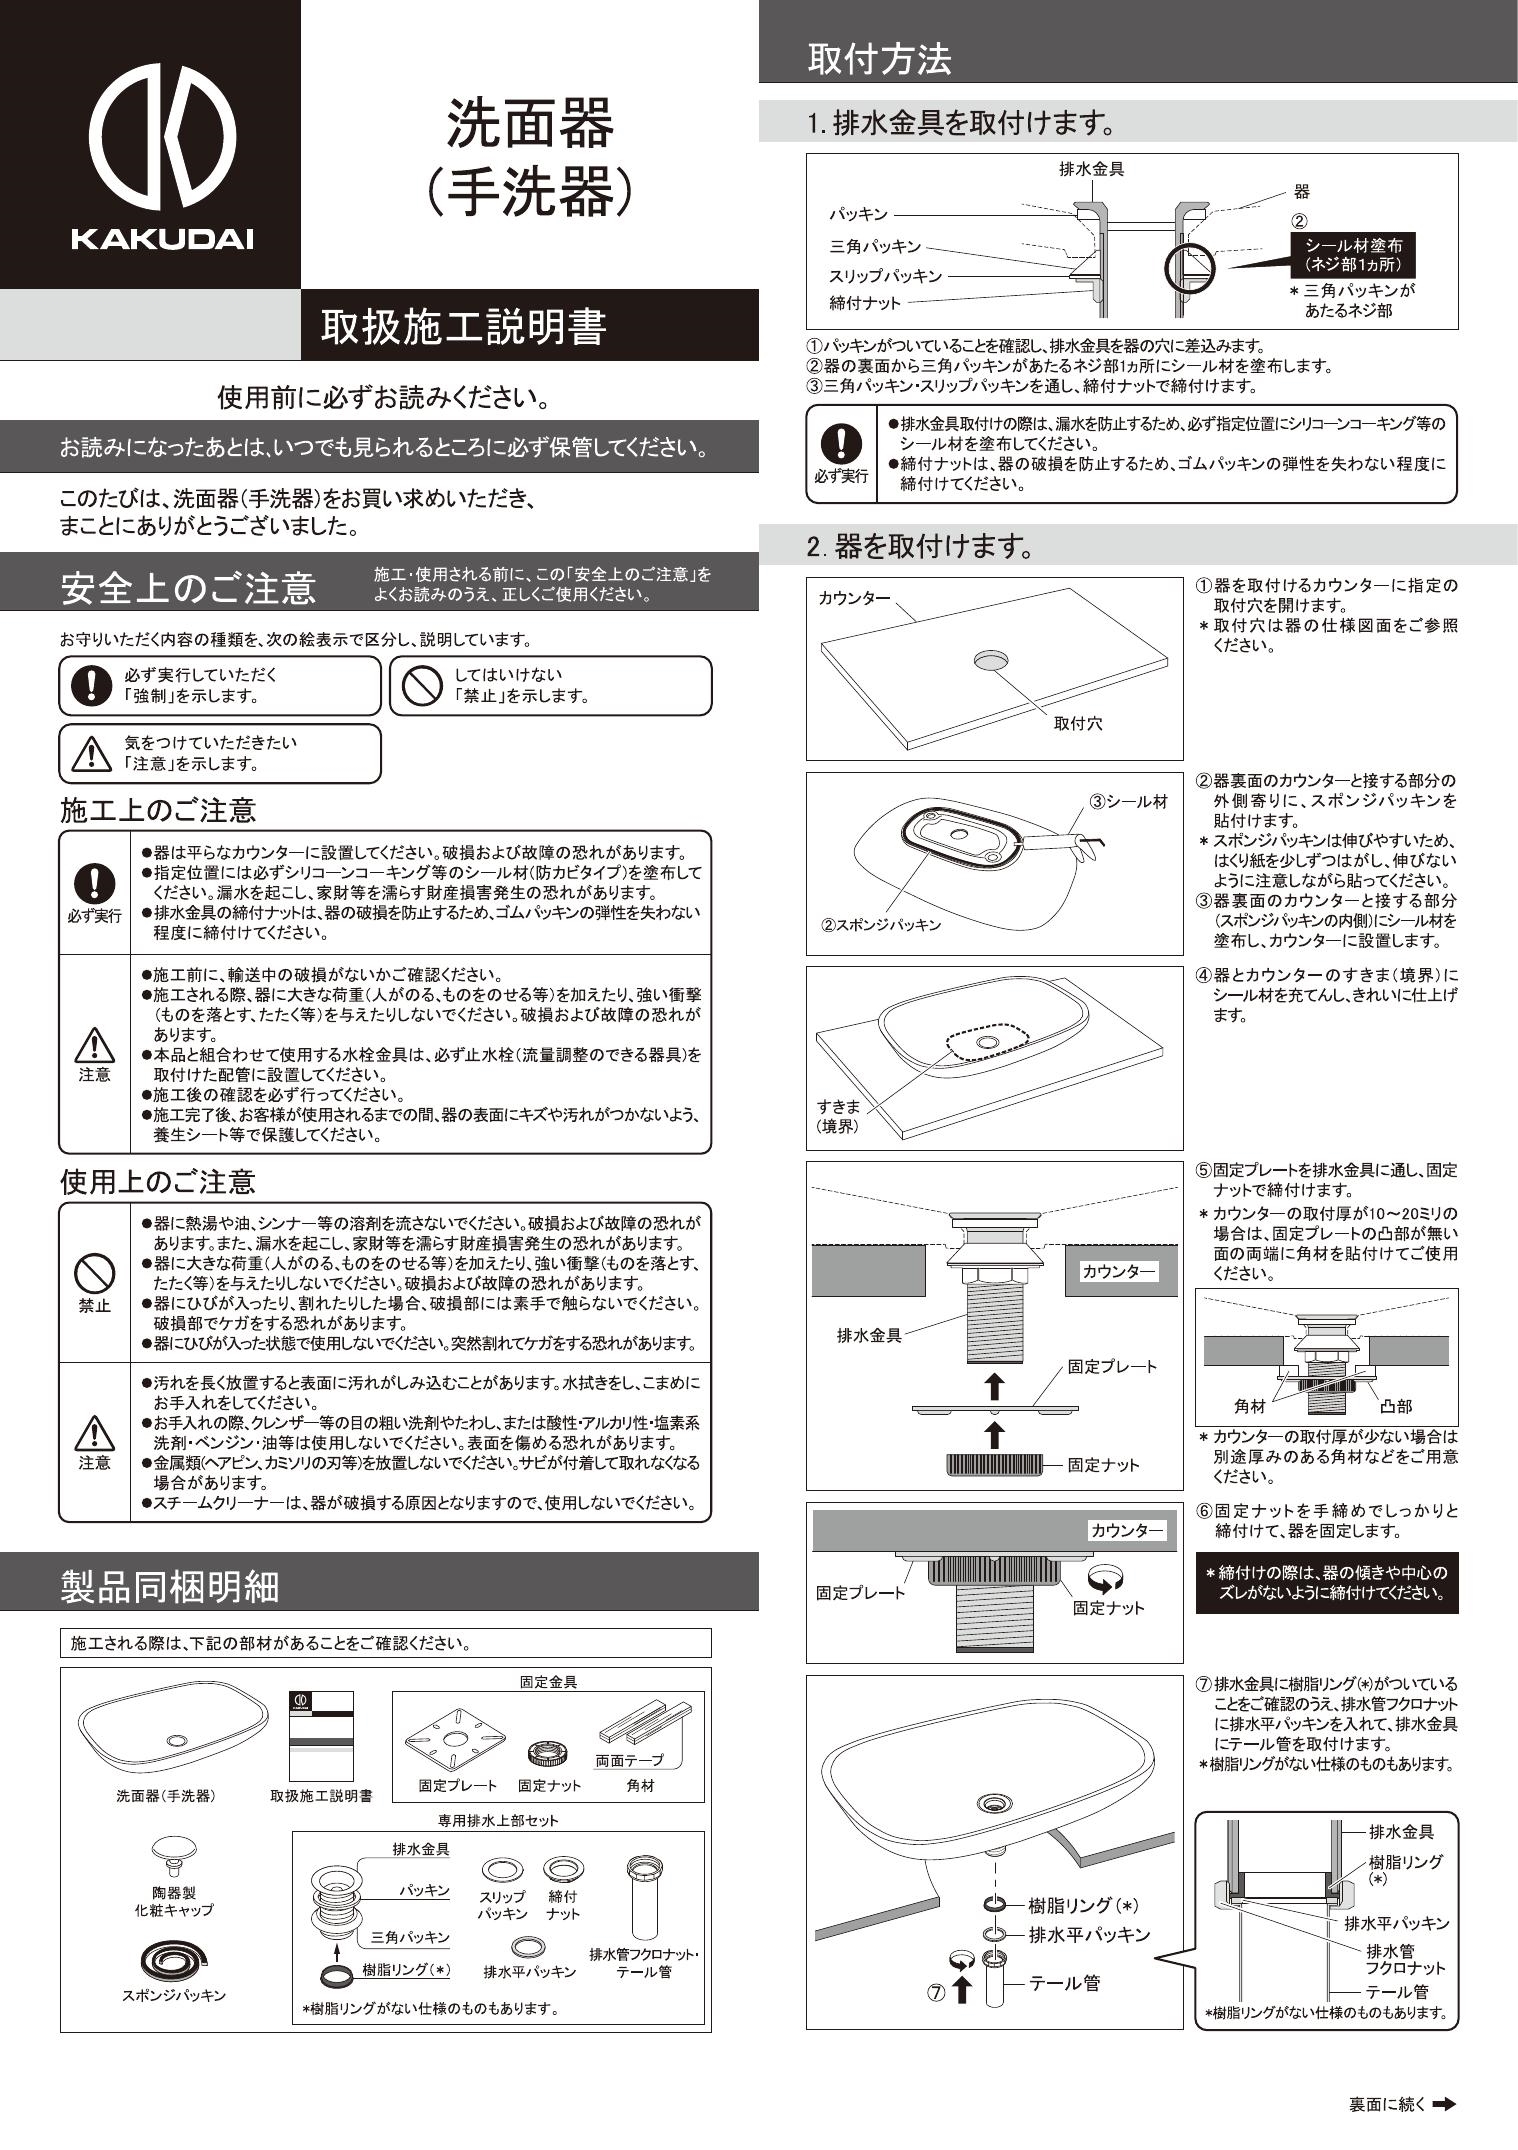 別倉庫からの配送 NEXT KAKUDAI カクダイ 丸型手洗器 マットホワイト LY-493233-W